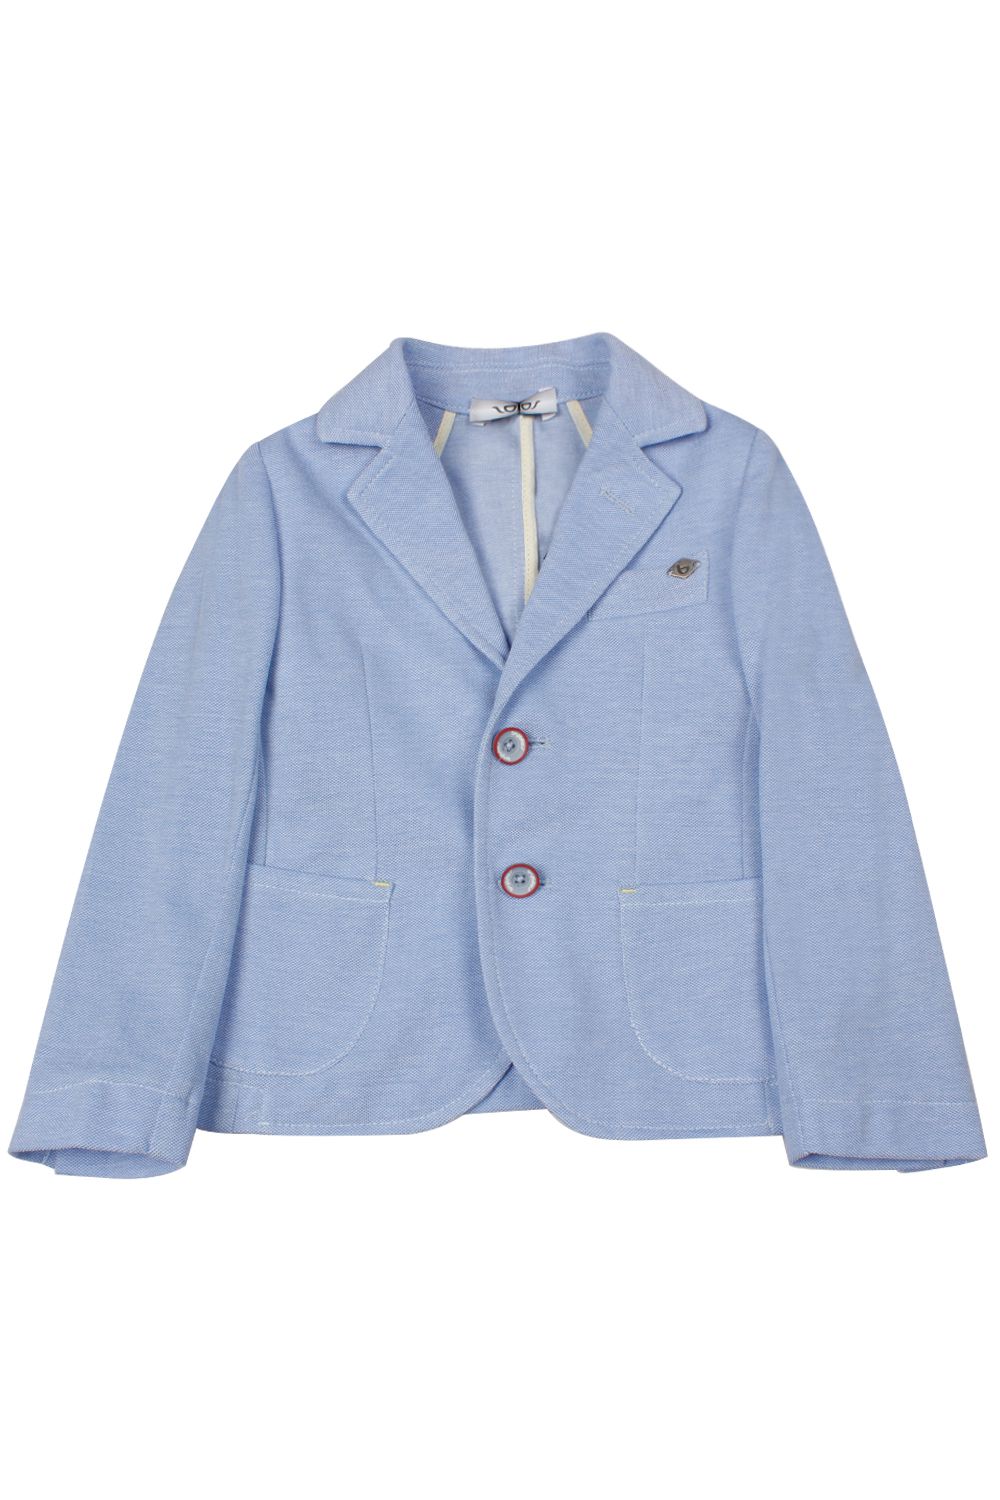 Пиджак Byblos, размер 80, цвет голубой - фото 1